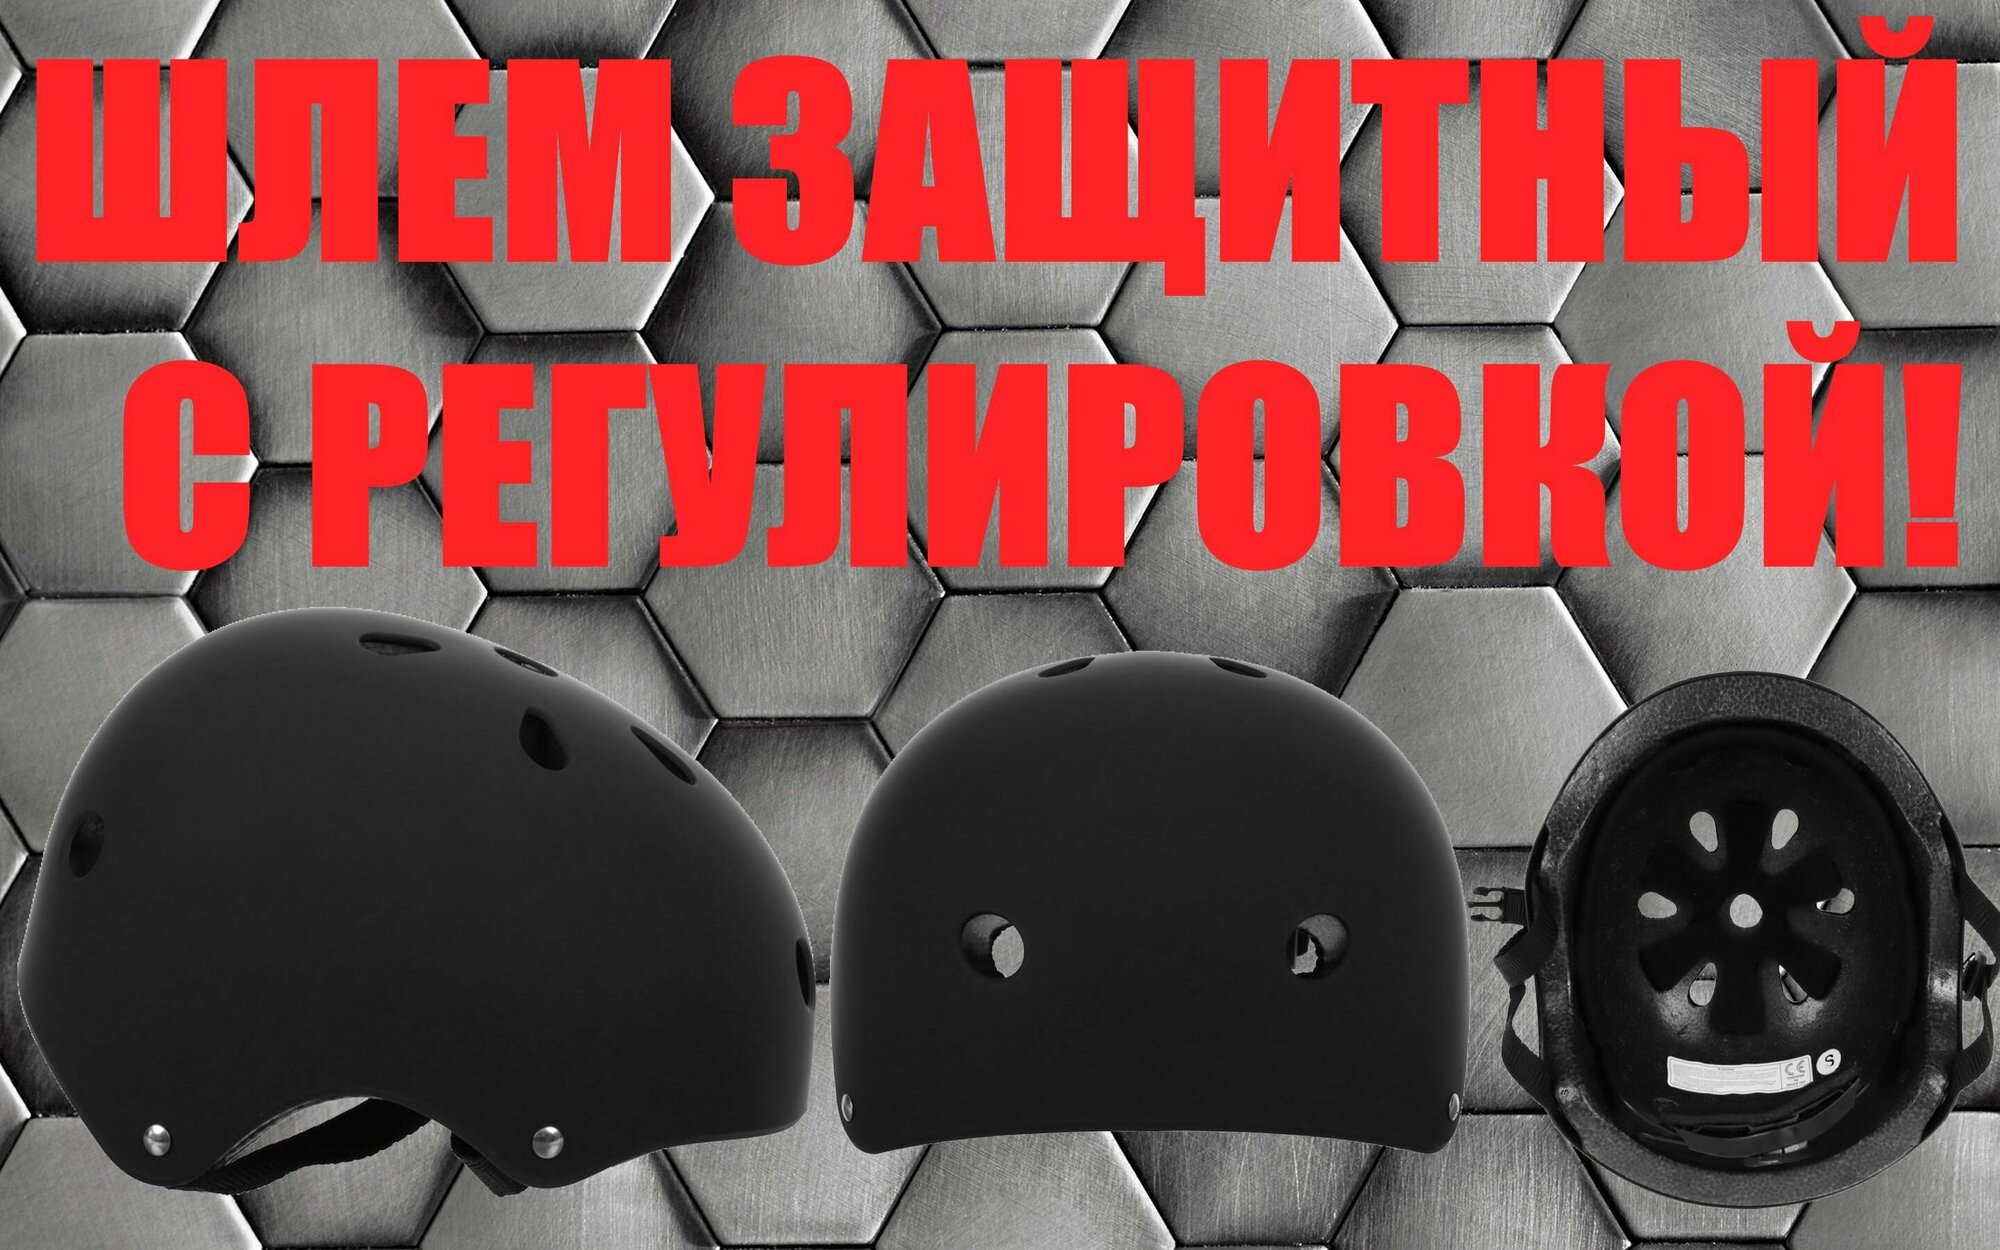 Шлем защитный, детский (обхват 55 см), цвет черный, с регулировкой, для катания на велосипеде, роликовых коньках, скейтборде